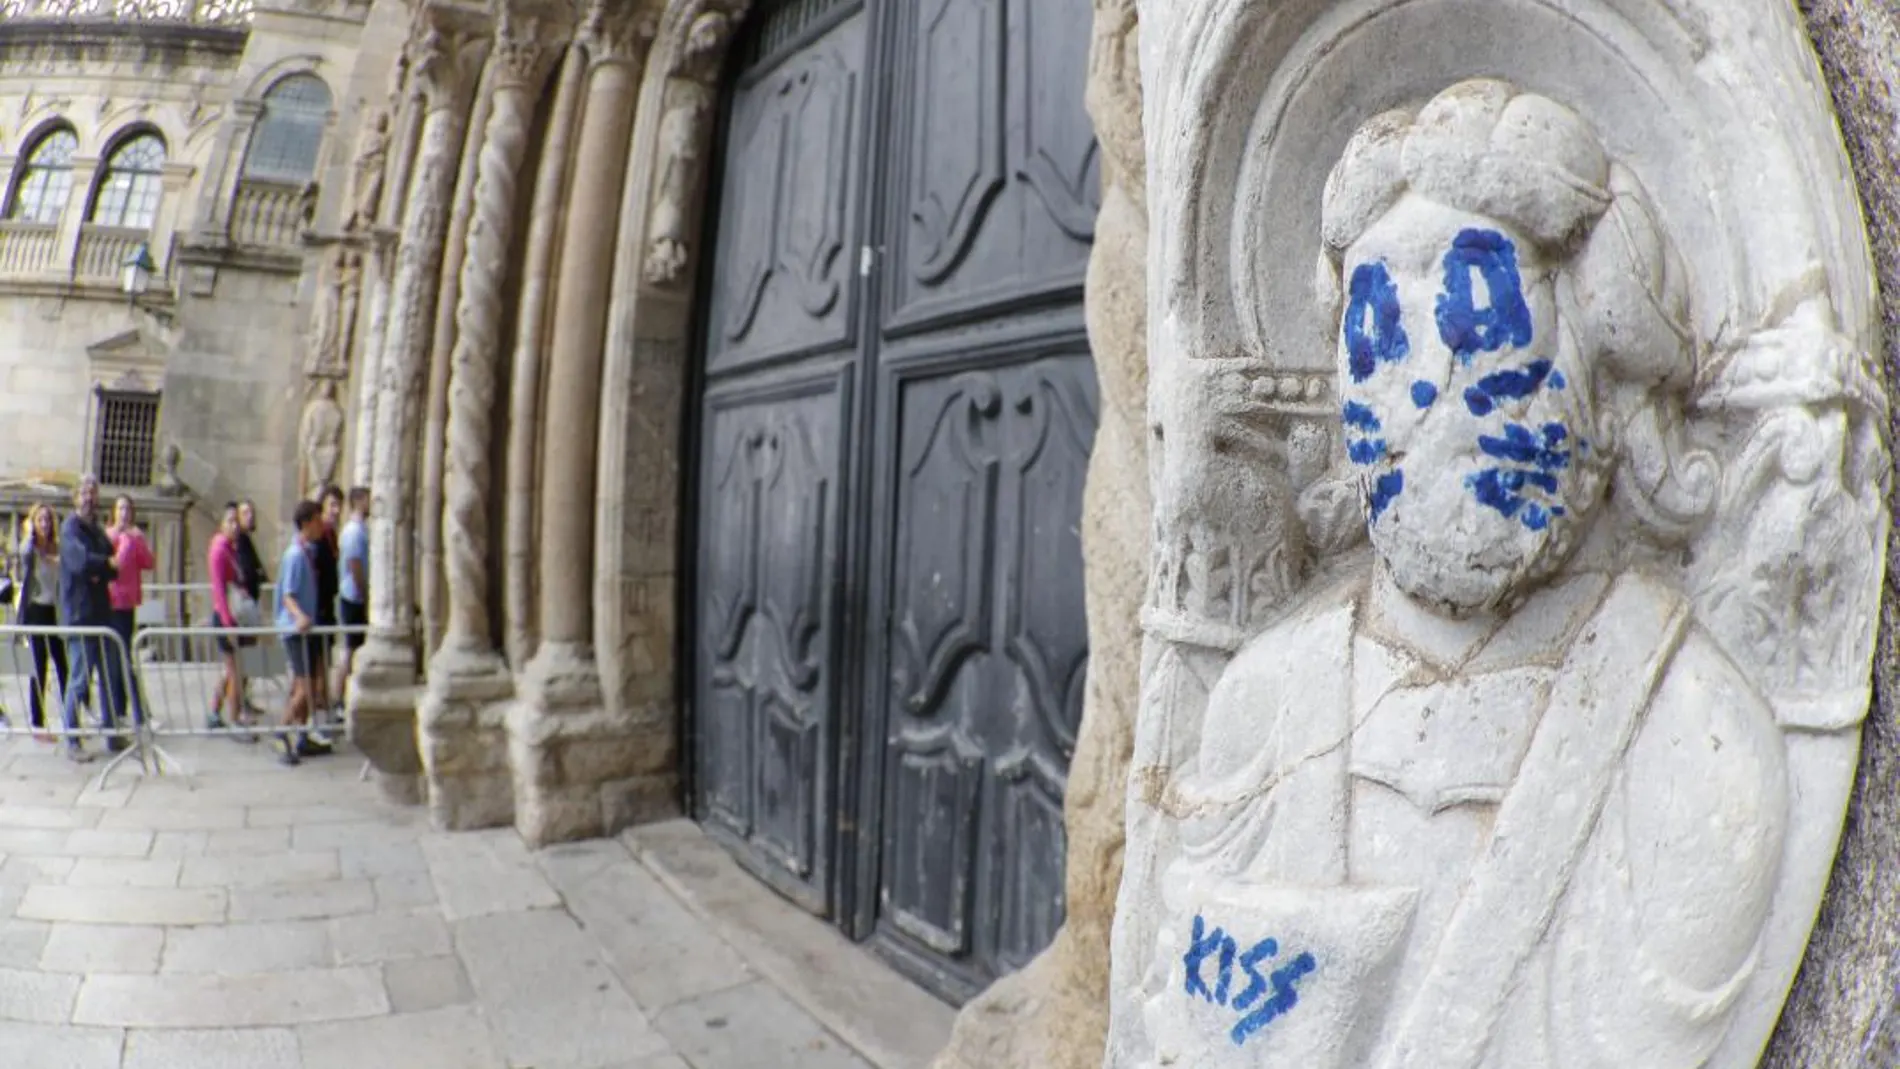 Una de las figuras de la fachada de Platerías de la catedral de Santiago de Compostela ha aparecido pintada emulando a uno de los miembros de Kiss / Efe